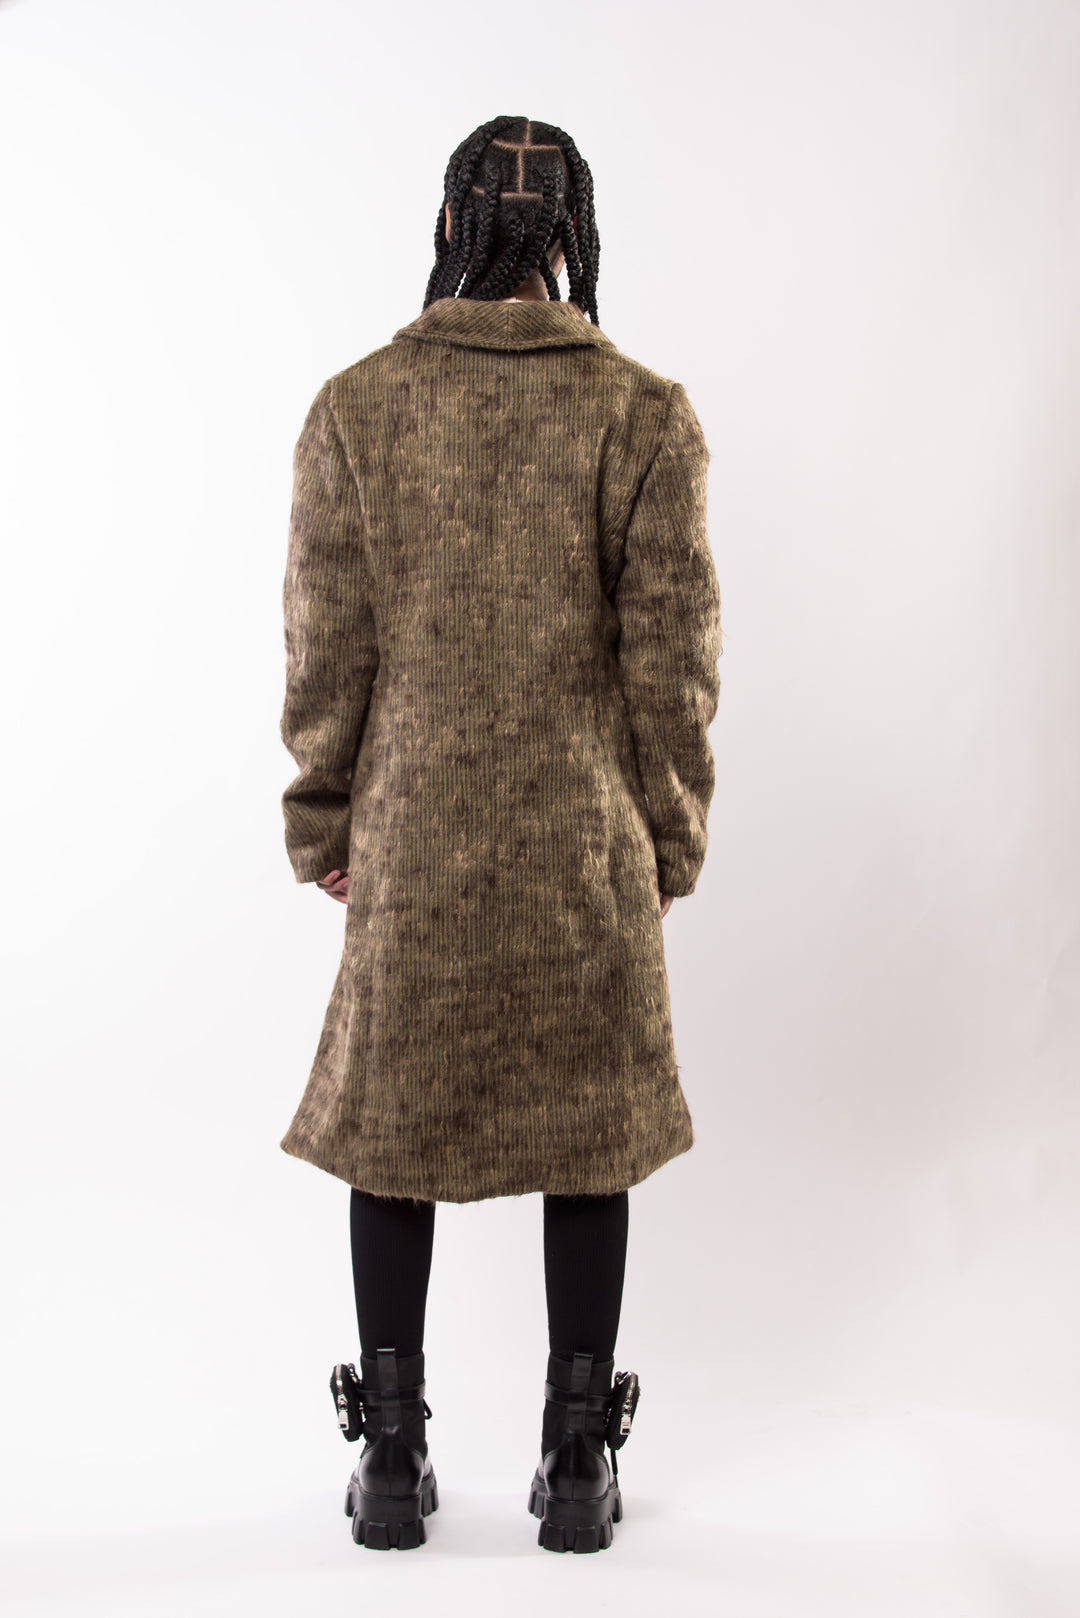 Asferi's Mohair 1/4 coat